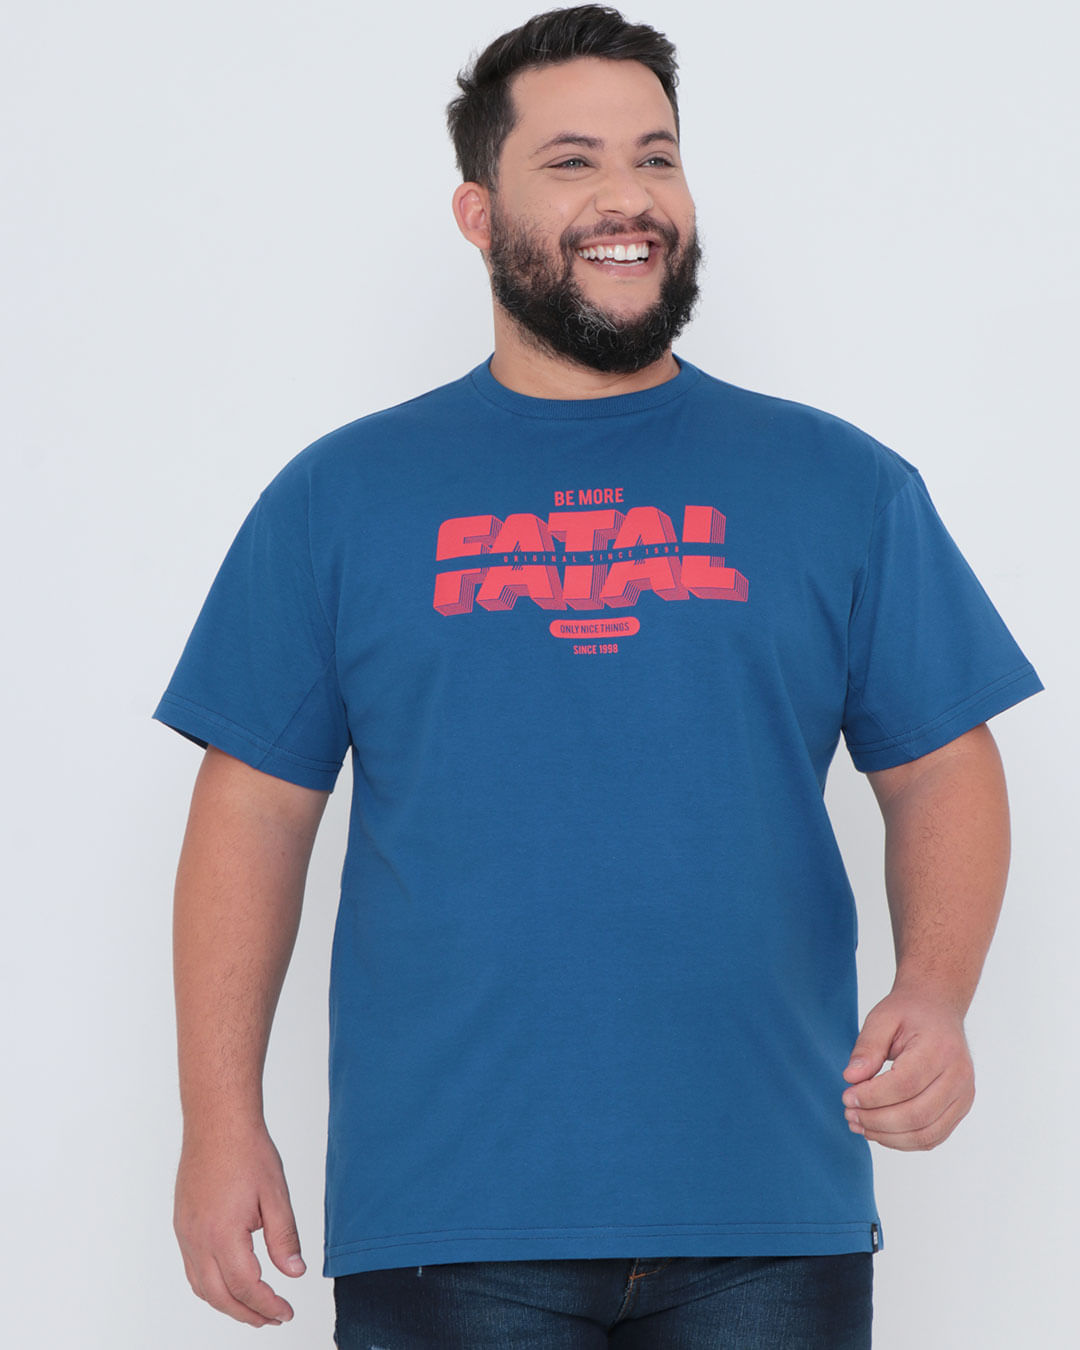 Camiseta-Plus-Size-Fatal-Estampada-Azul